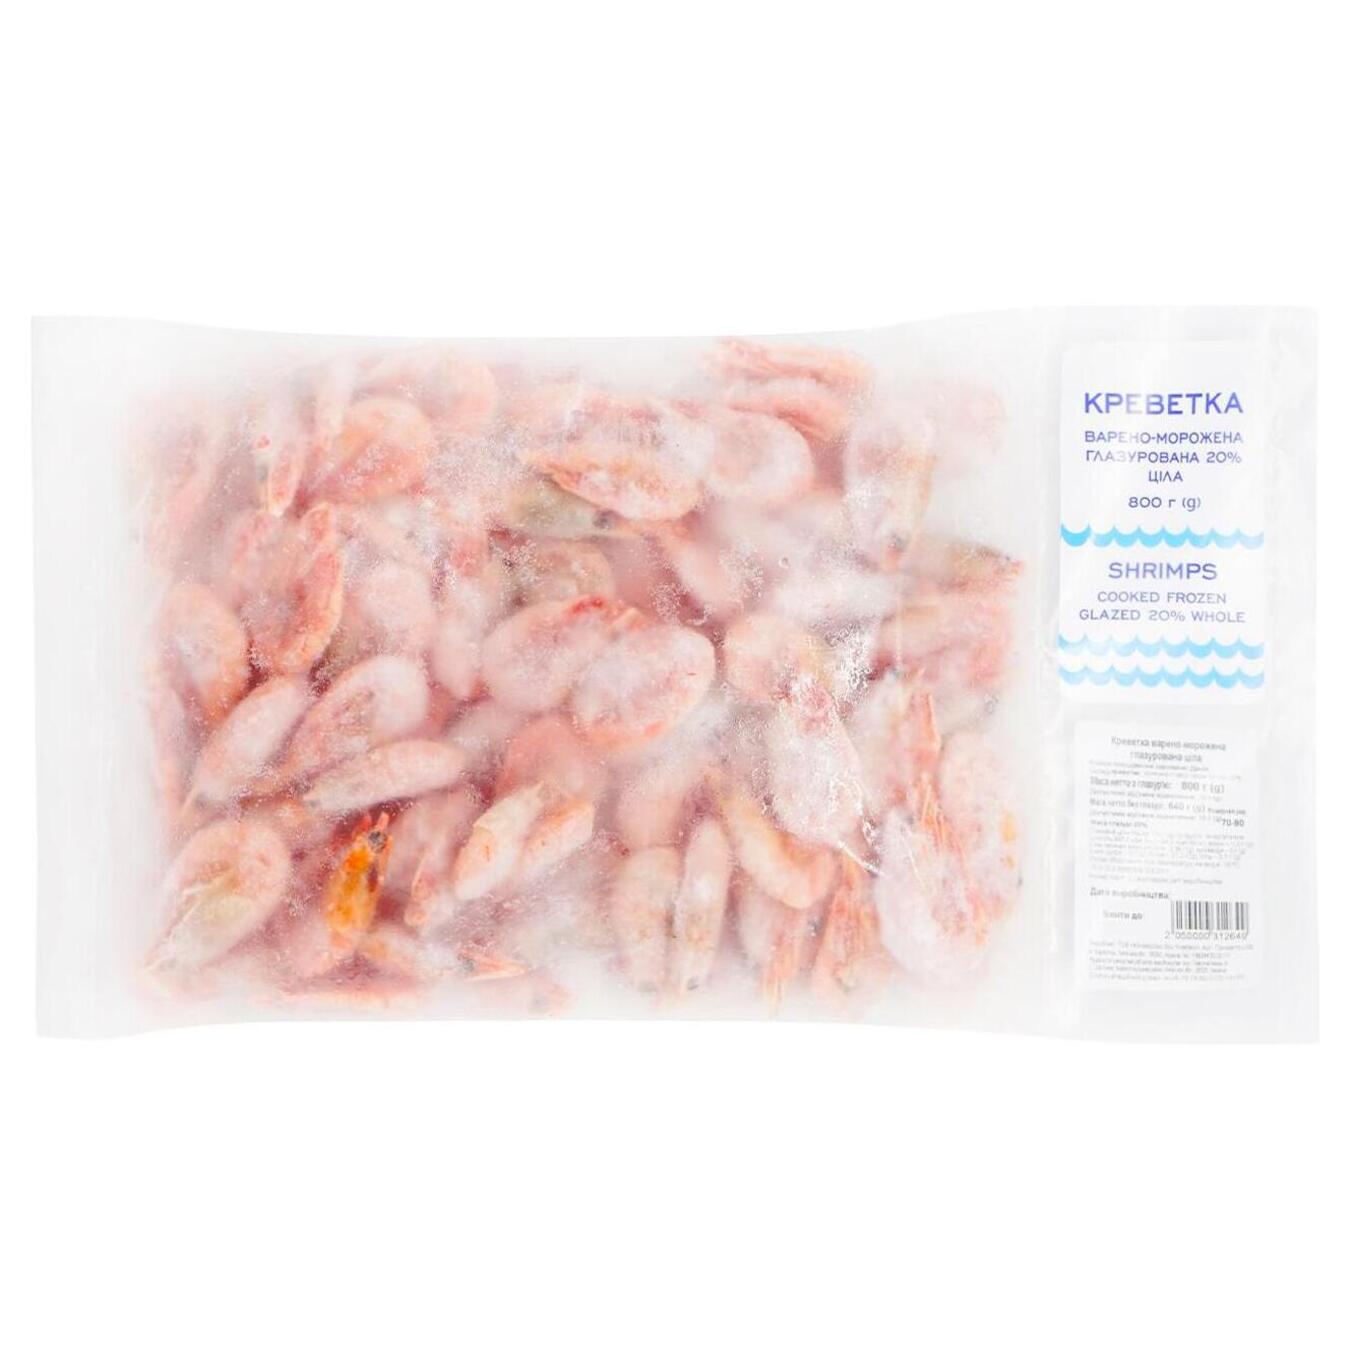 Shrimps 70/90 s/m 800g